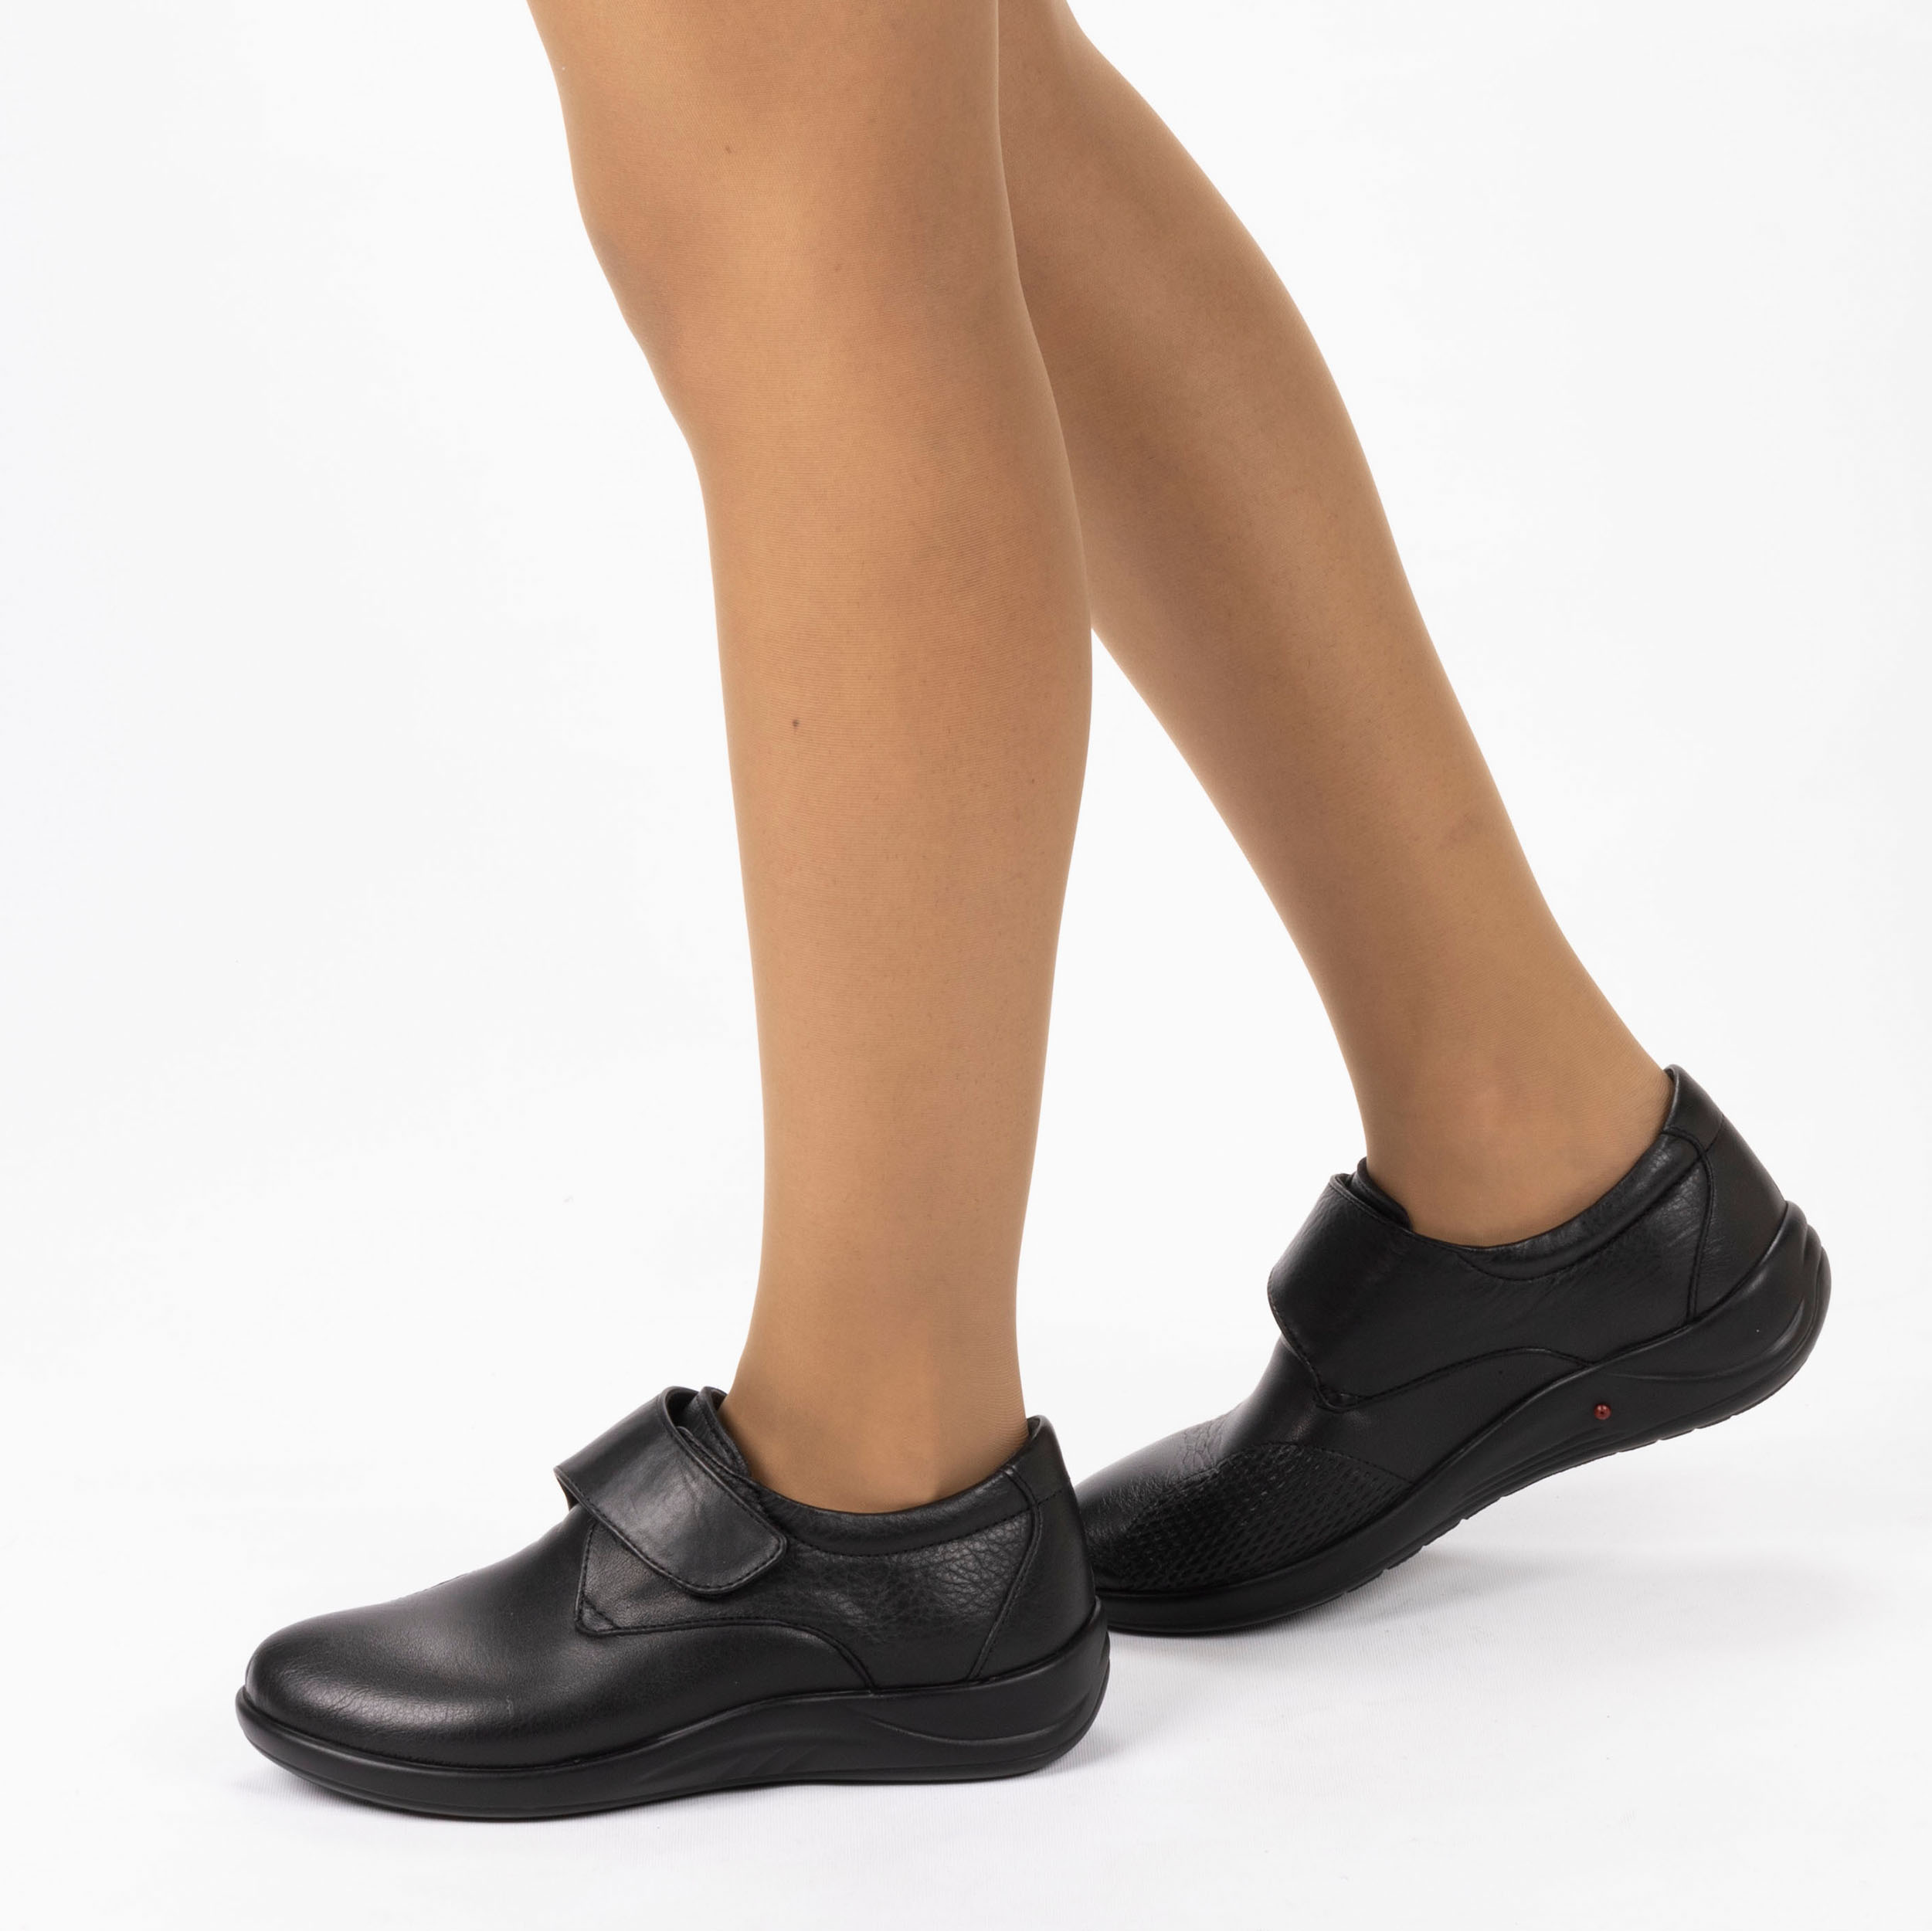 Kadın Hakiki Deri Anatomik Hafif Tasarım Topuk Yastıklı Cırt Cırtlı Kemik Çıkıntısı Anne Ayakkabısı, Renk: Siyah, Beden: 40